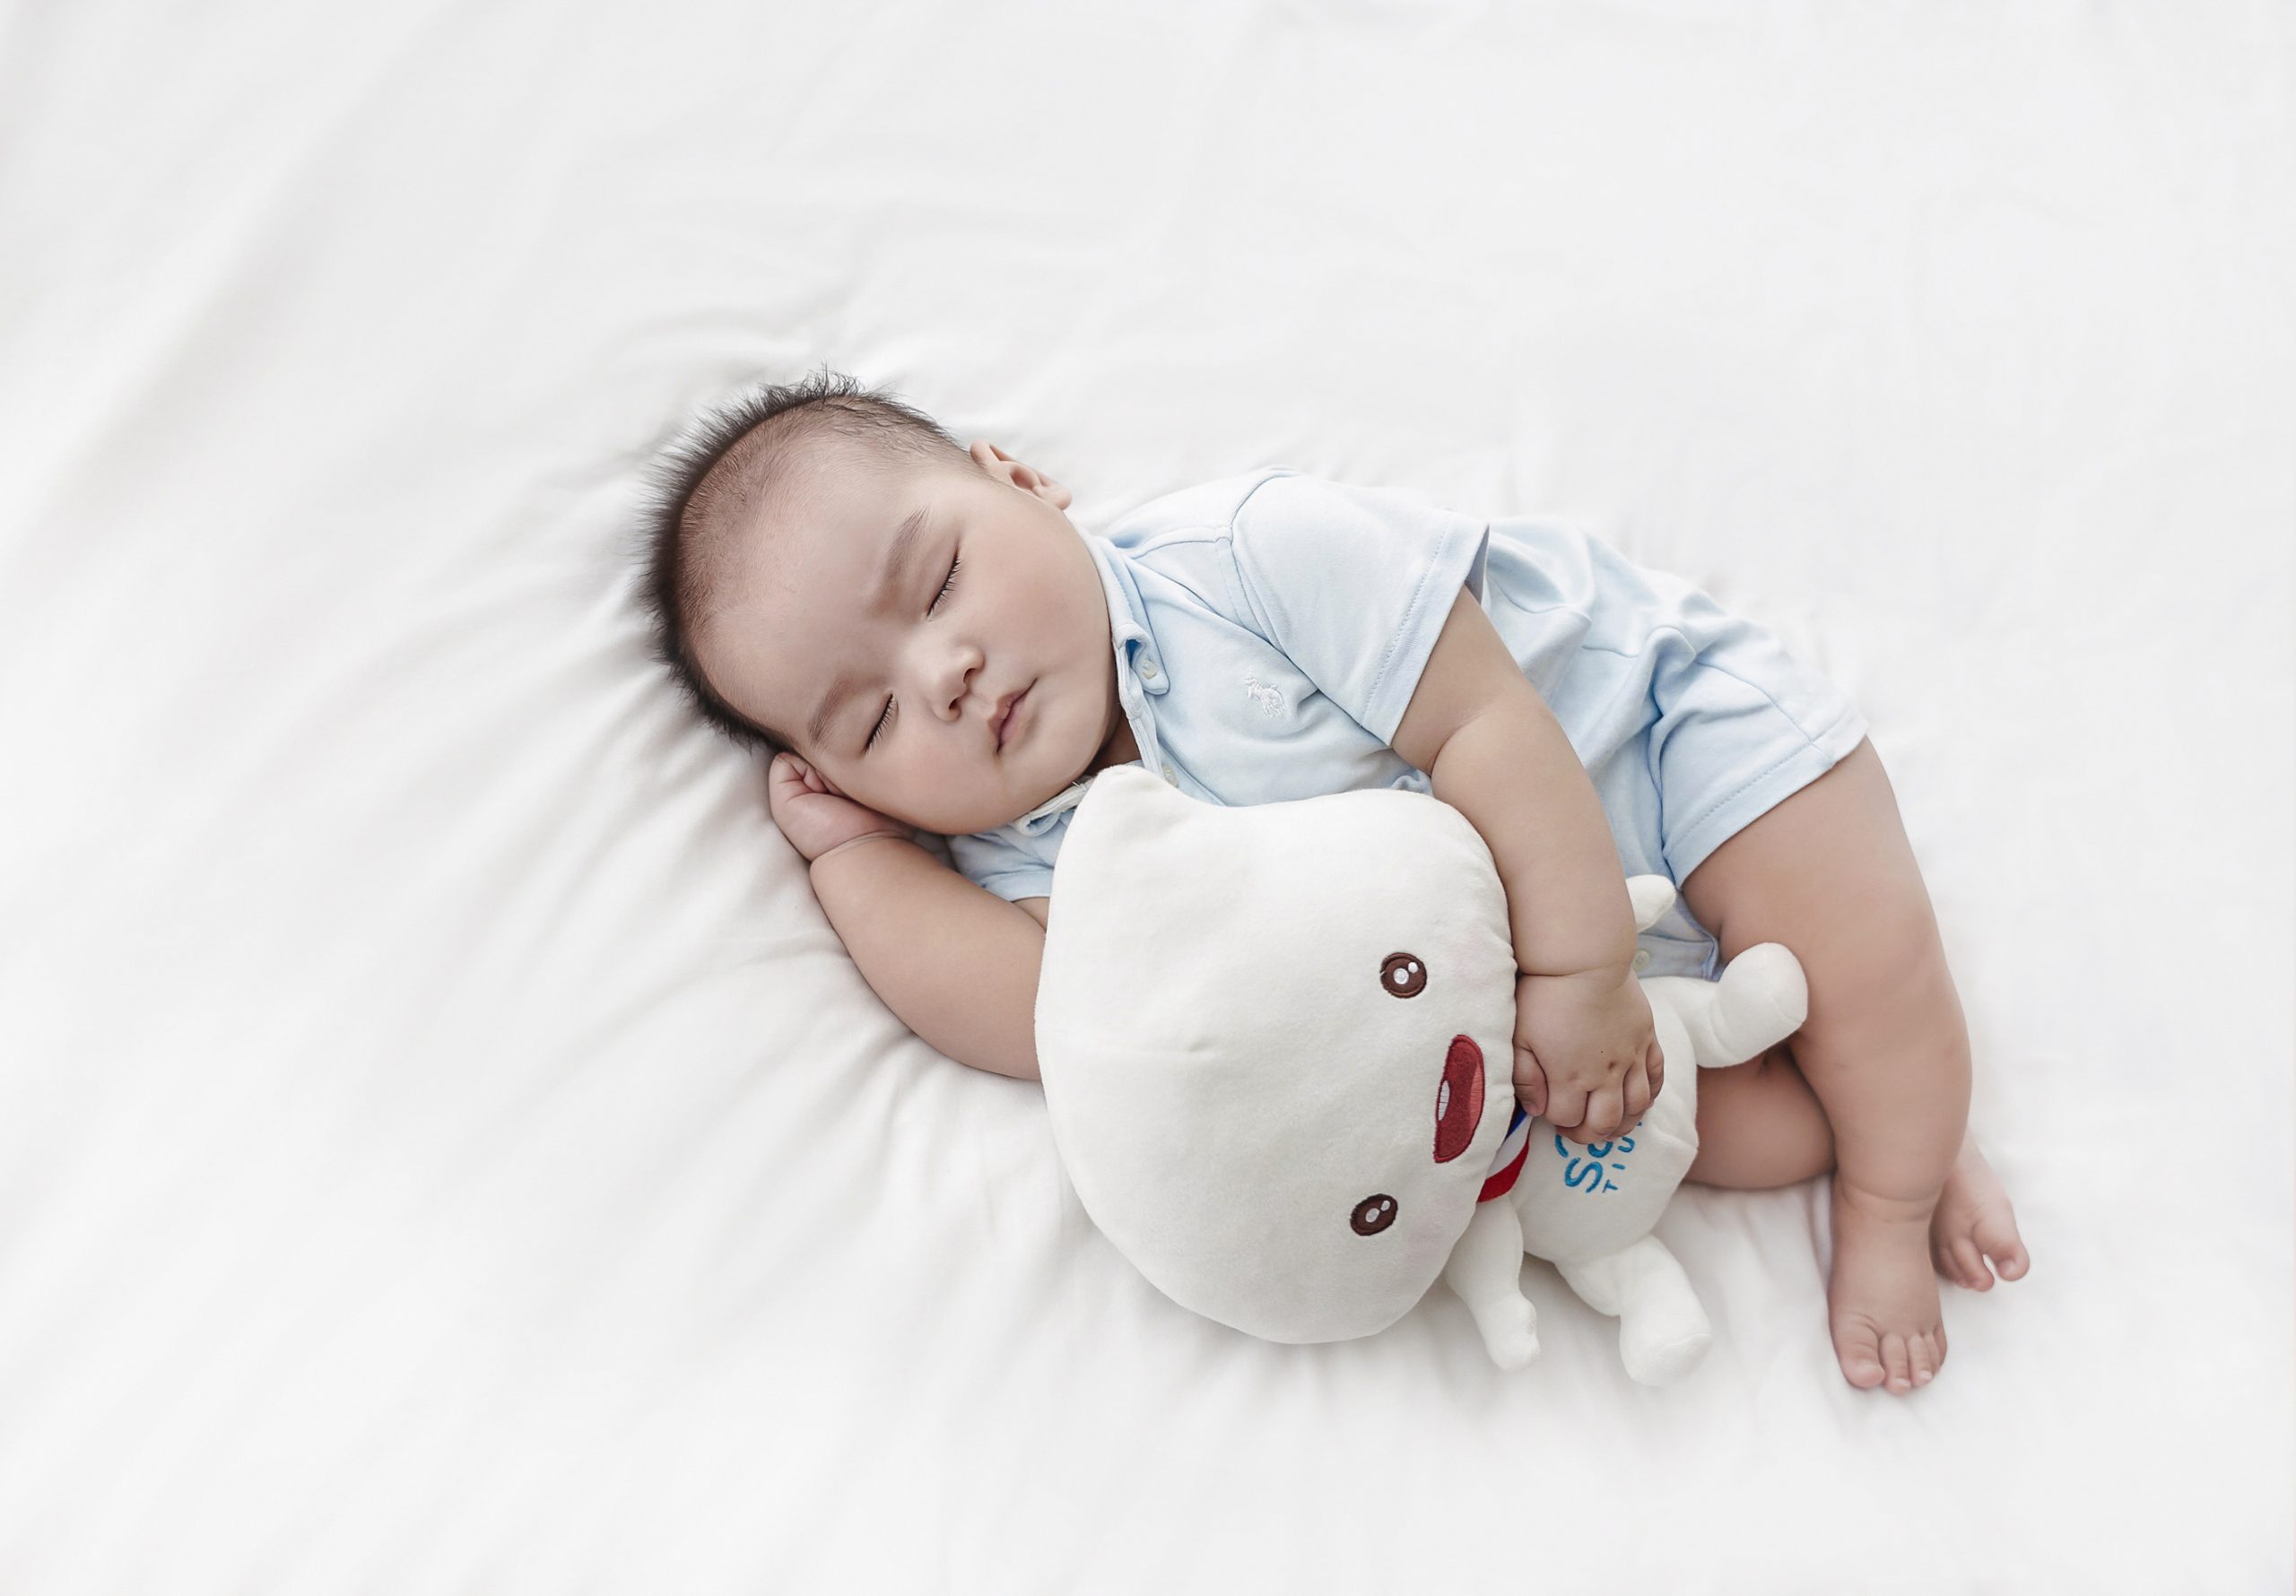 Môt giấc ngủ ngon sẽ tạo nền tảng vững chắc cho bé phát triển khoẻ mạnh